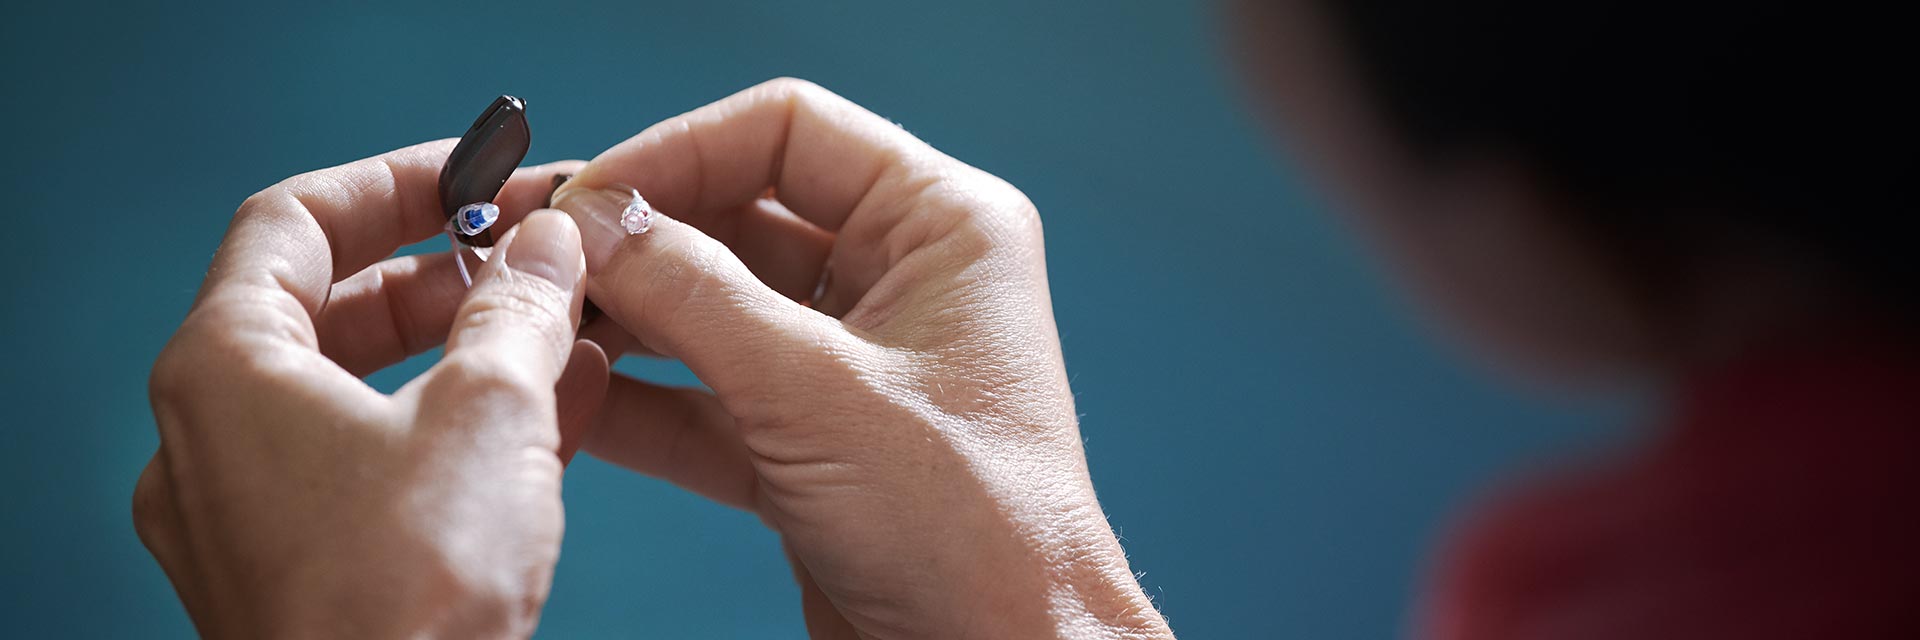 Imagem mostra duas mãos a trocar pilhas de aparelhos auditivos